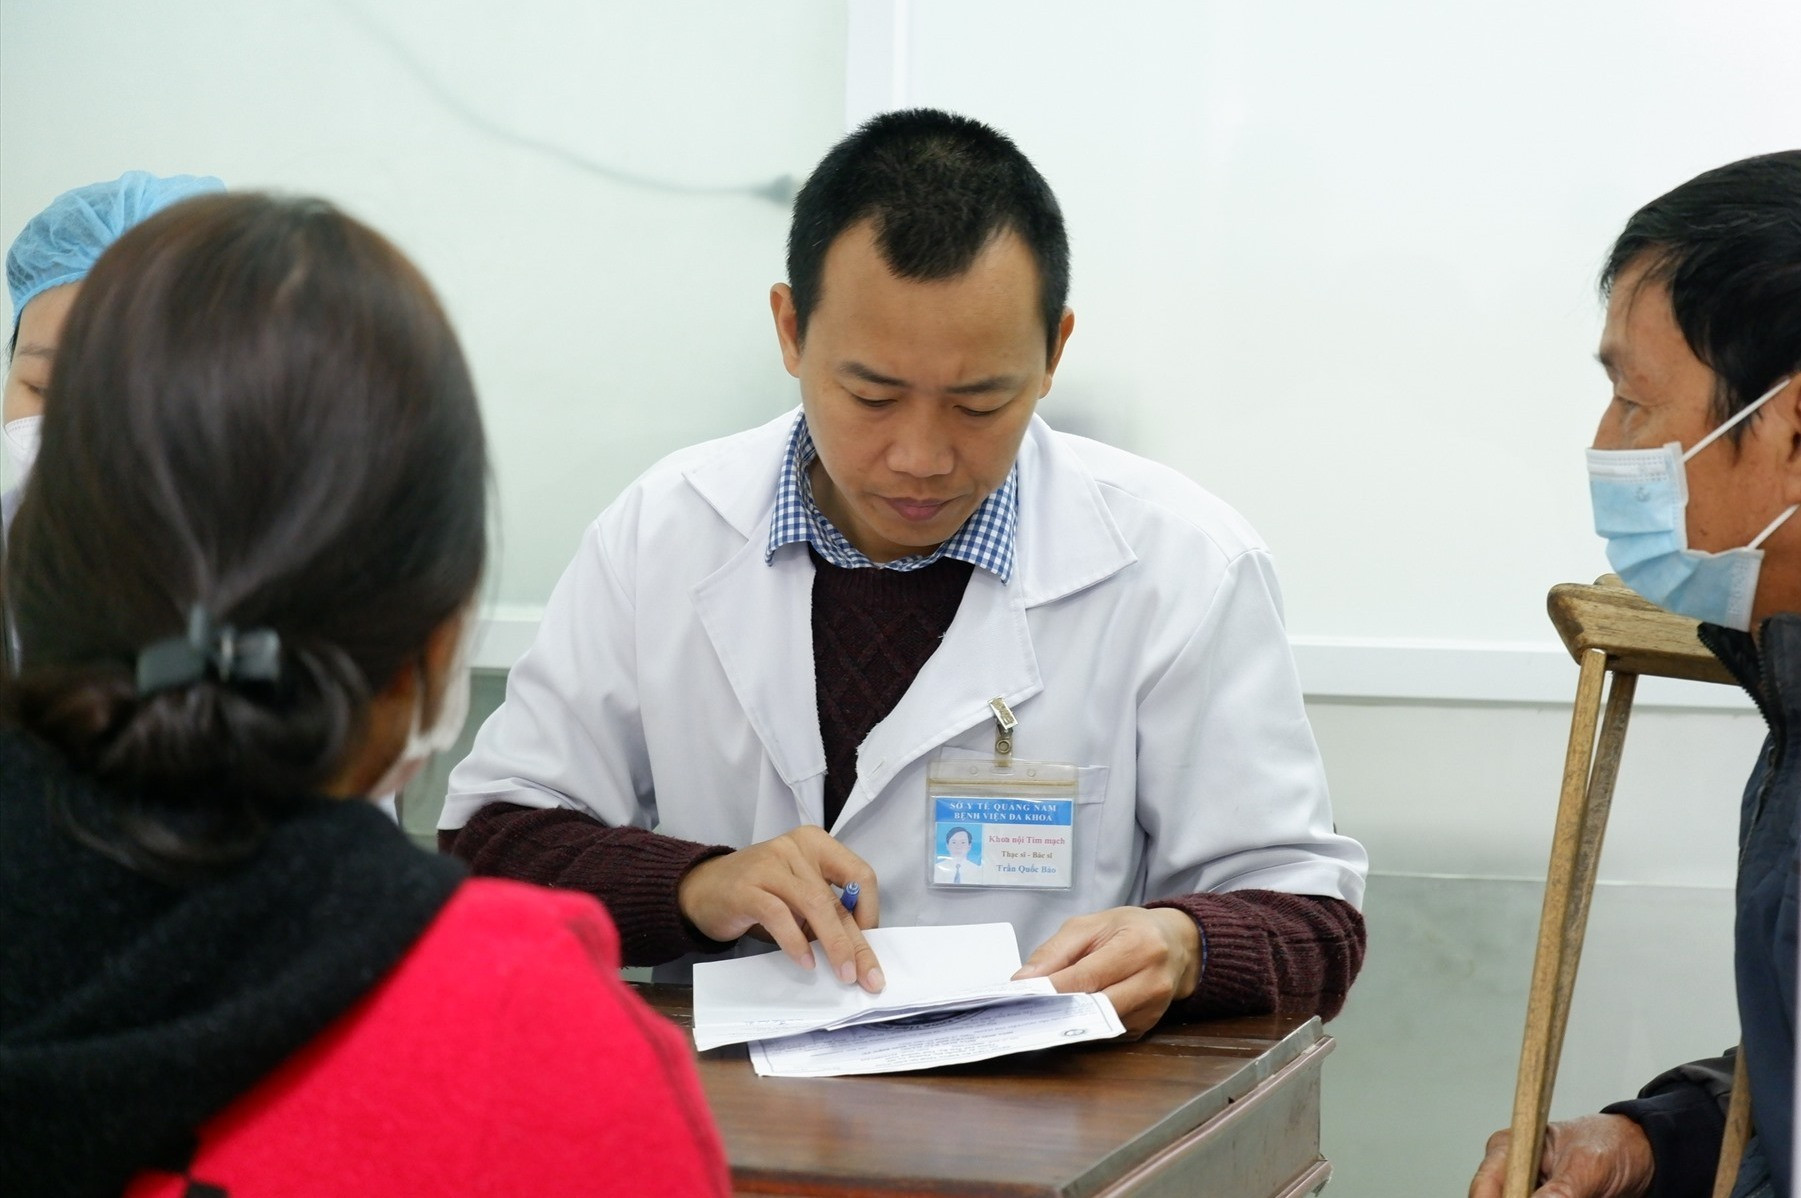 Đội ngũ y bác sĩ BVĐK tỉnh Quảng Nam với chuyên môn nghiệp vụ ngày càng nâng cao. Ảnh: X.H